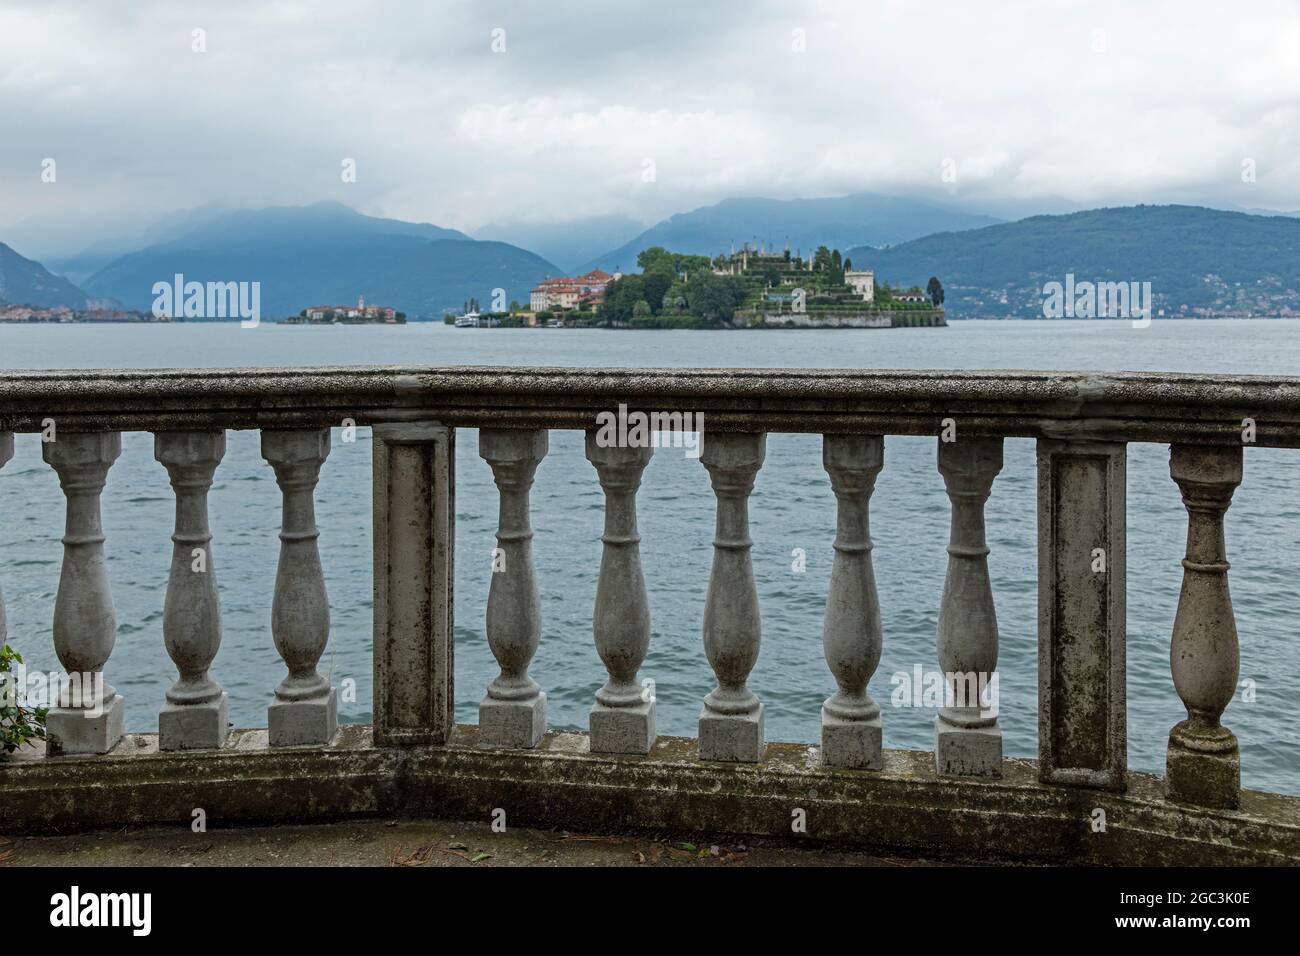 Frente al lago, Isola Bella, Stresa, Lago Maggiore, Piamonte, Italia Foto de stock